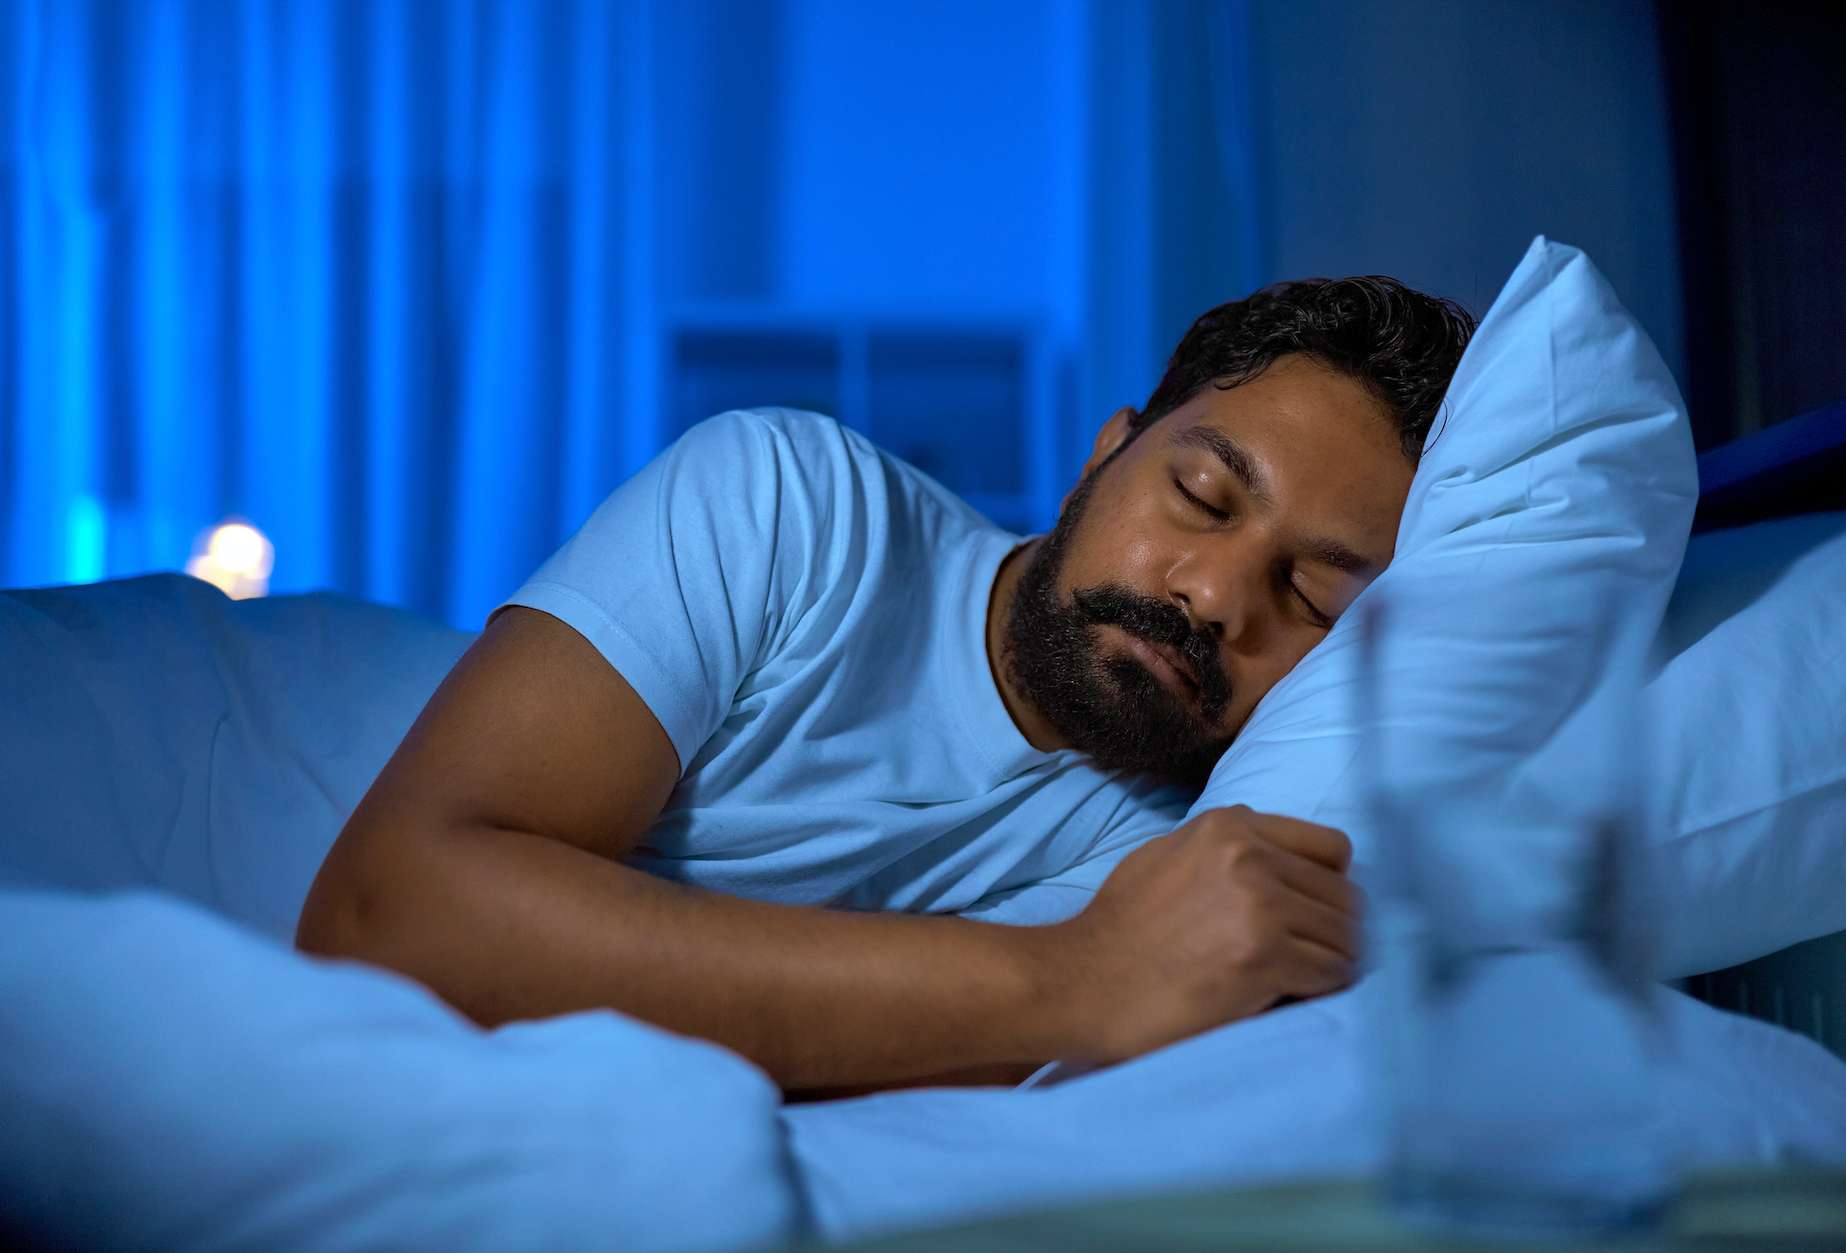 Get Better, Natural Sleep - 5 Top Tips